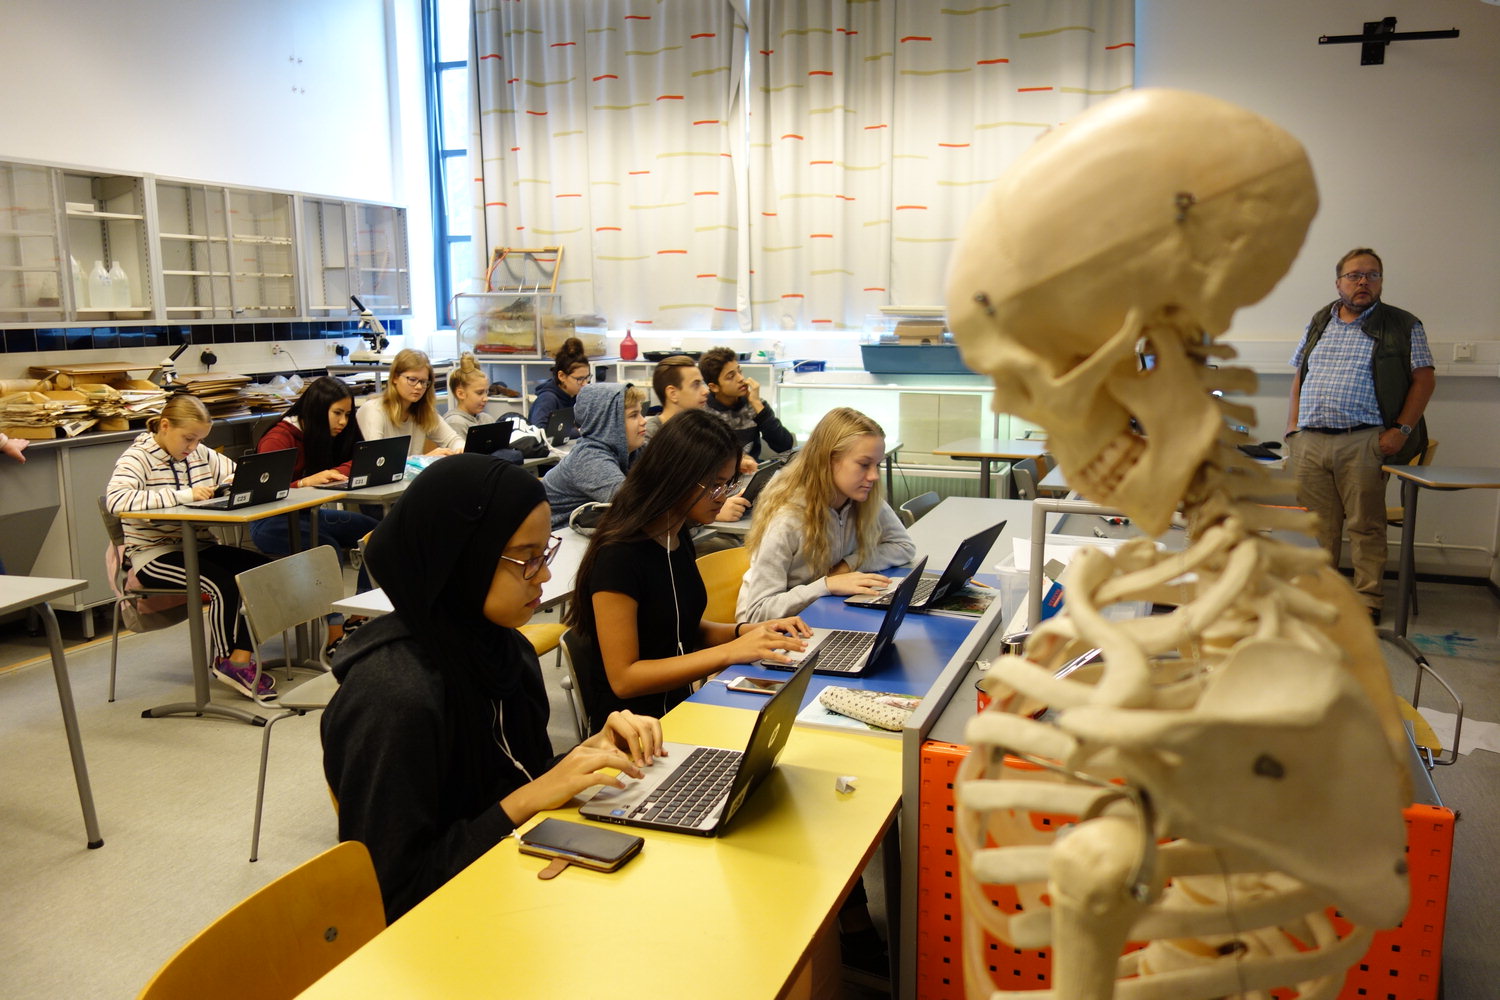 핀란드 야르벤빼라 중학교 학생들이 생물수업 시간에 노트북을 활용해 학습앱으로 배우고 있다. / 김금란·이지효<br>